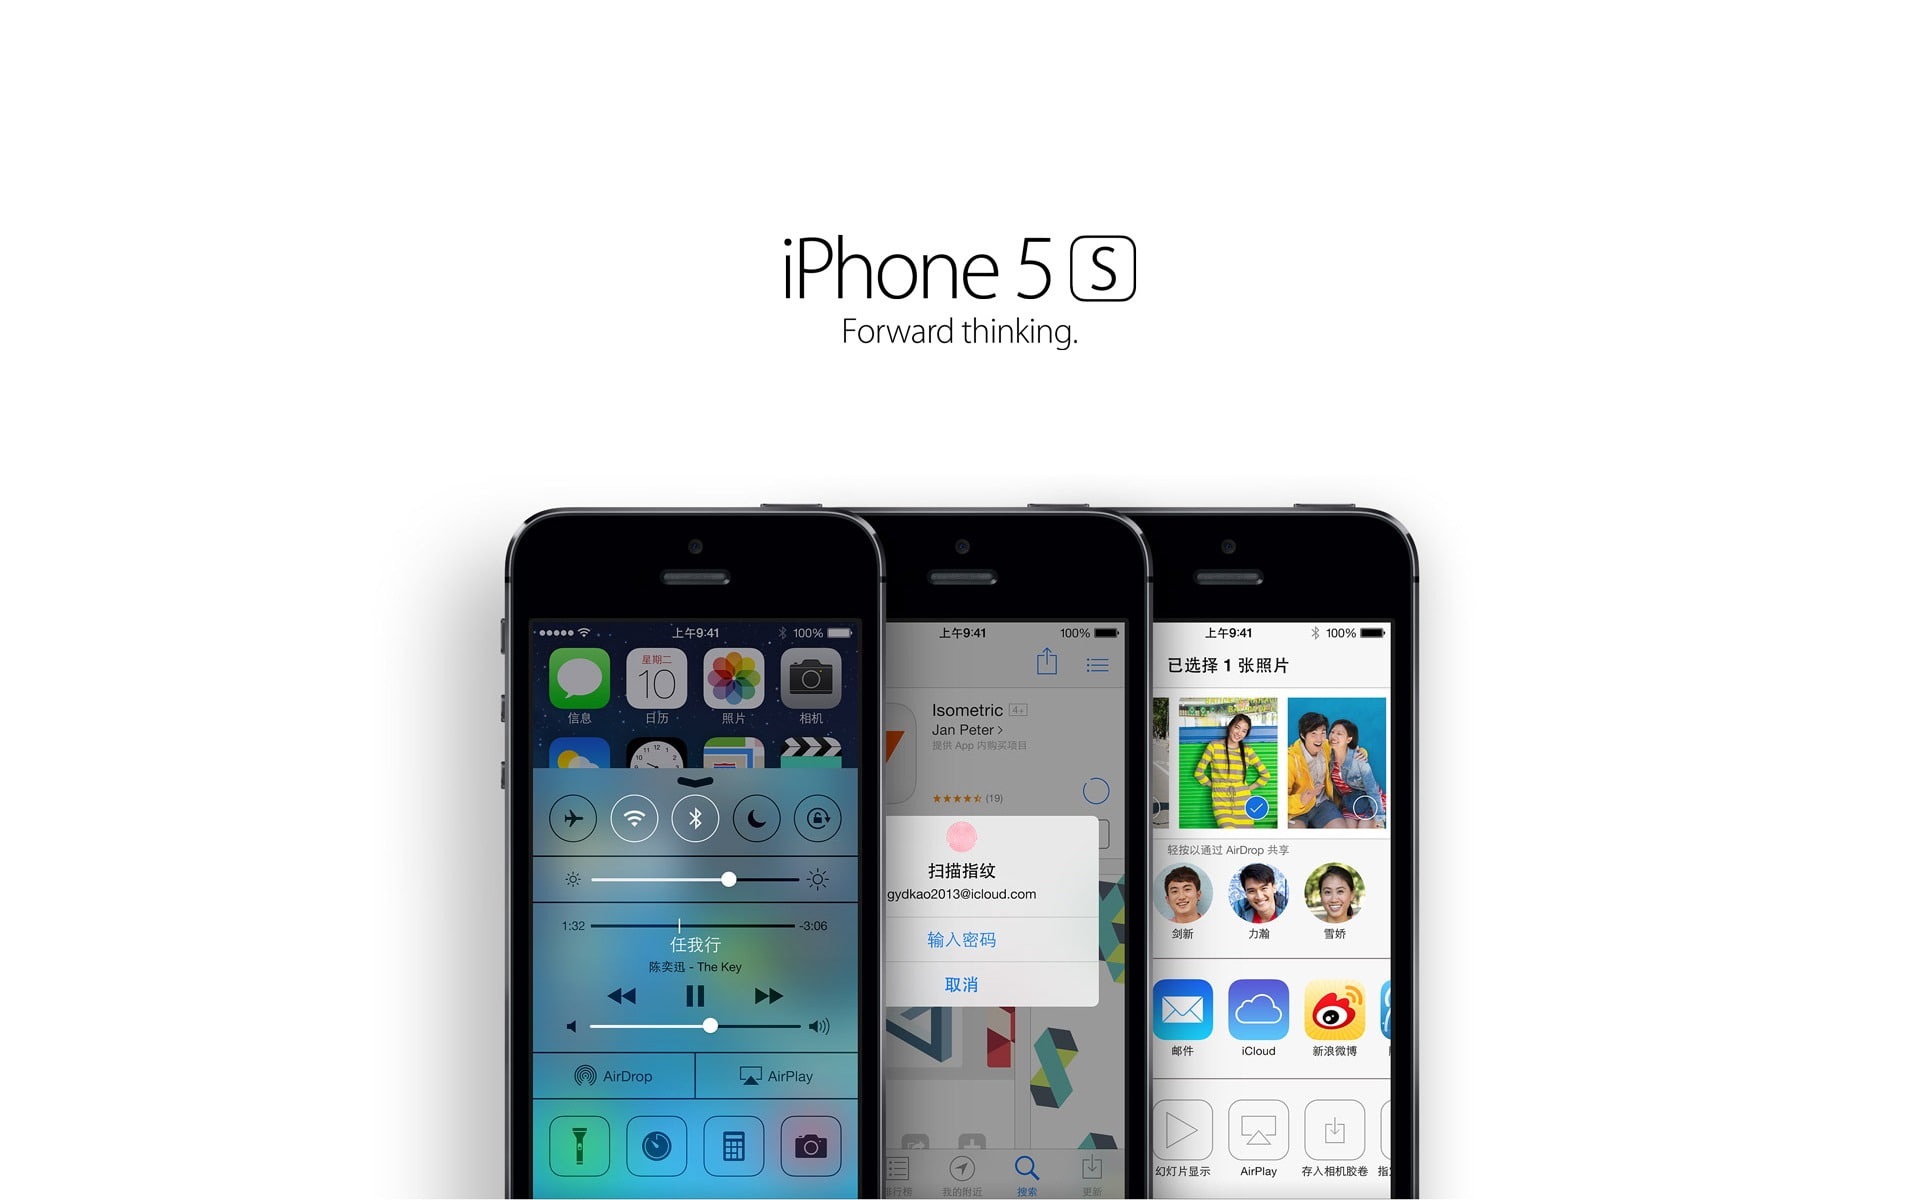 Apple iOS 7 iPhone 5S HD Desktop Wallpaper 15, space gray iPhone 5s's